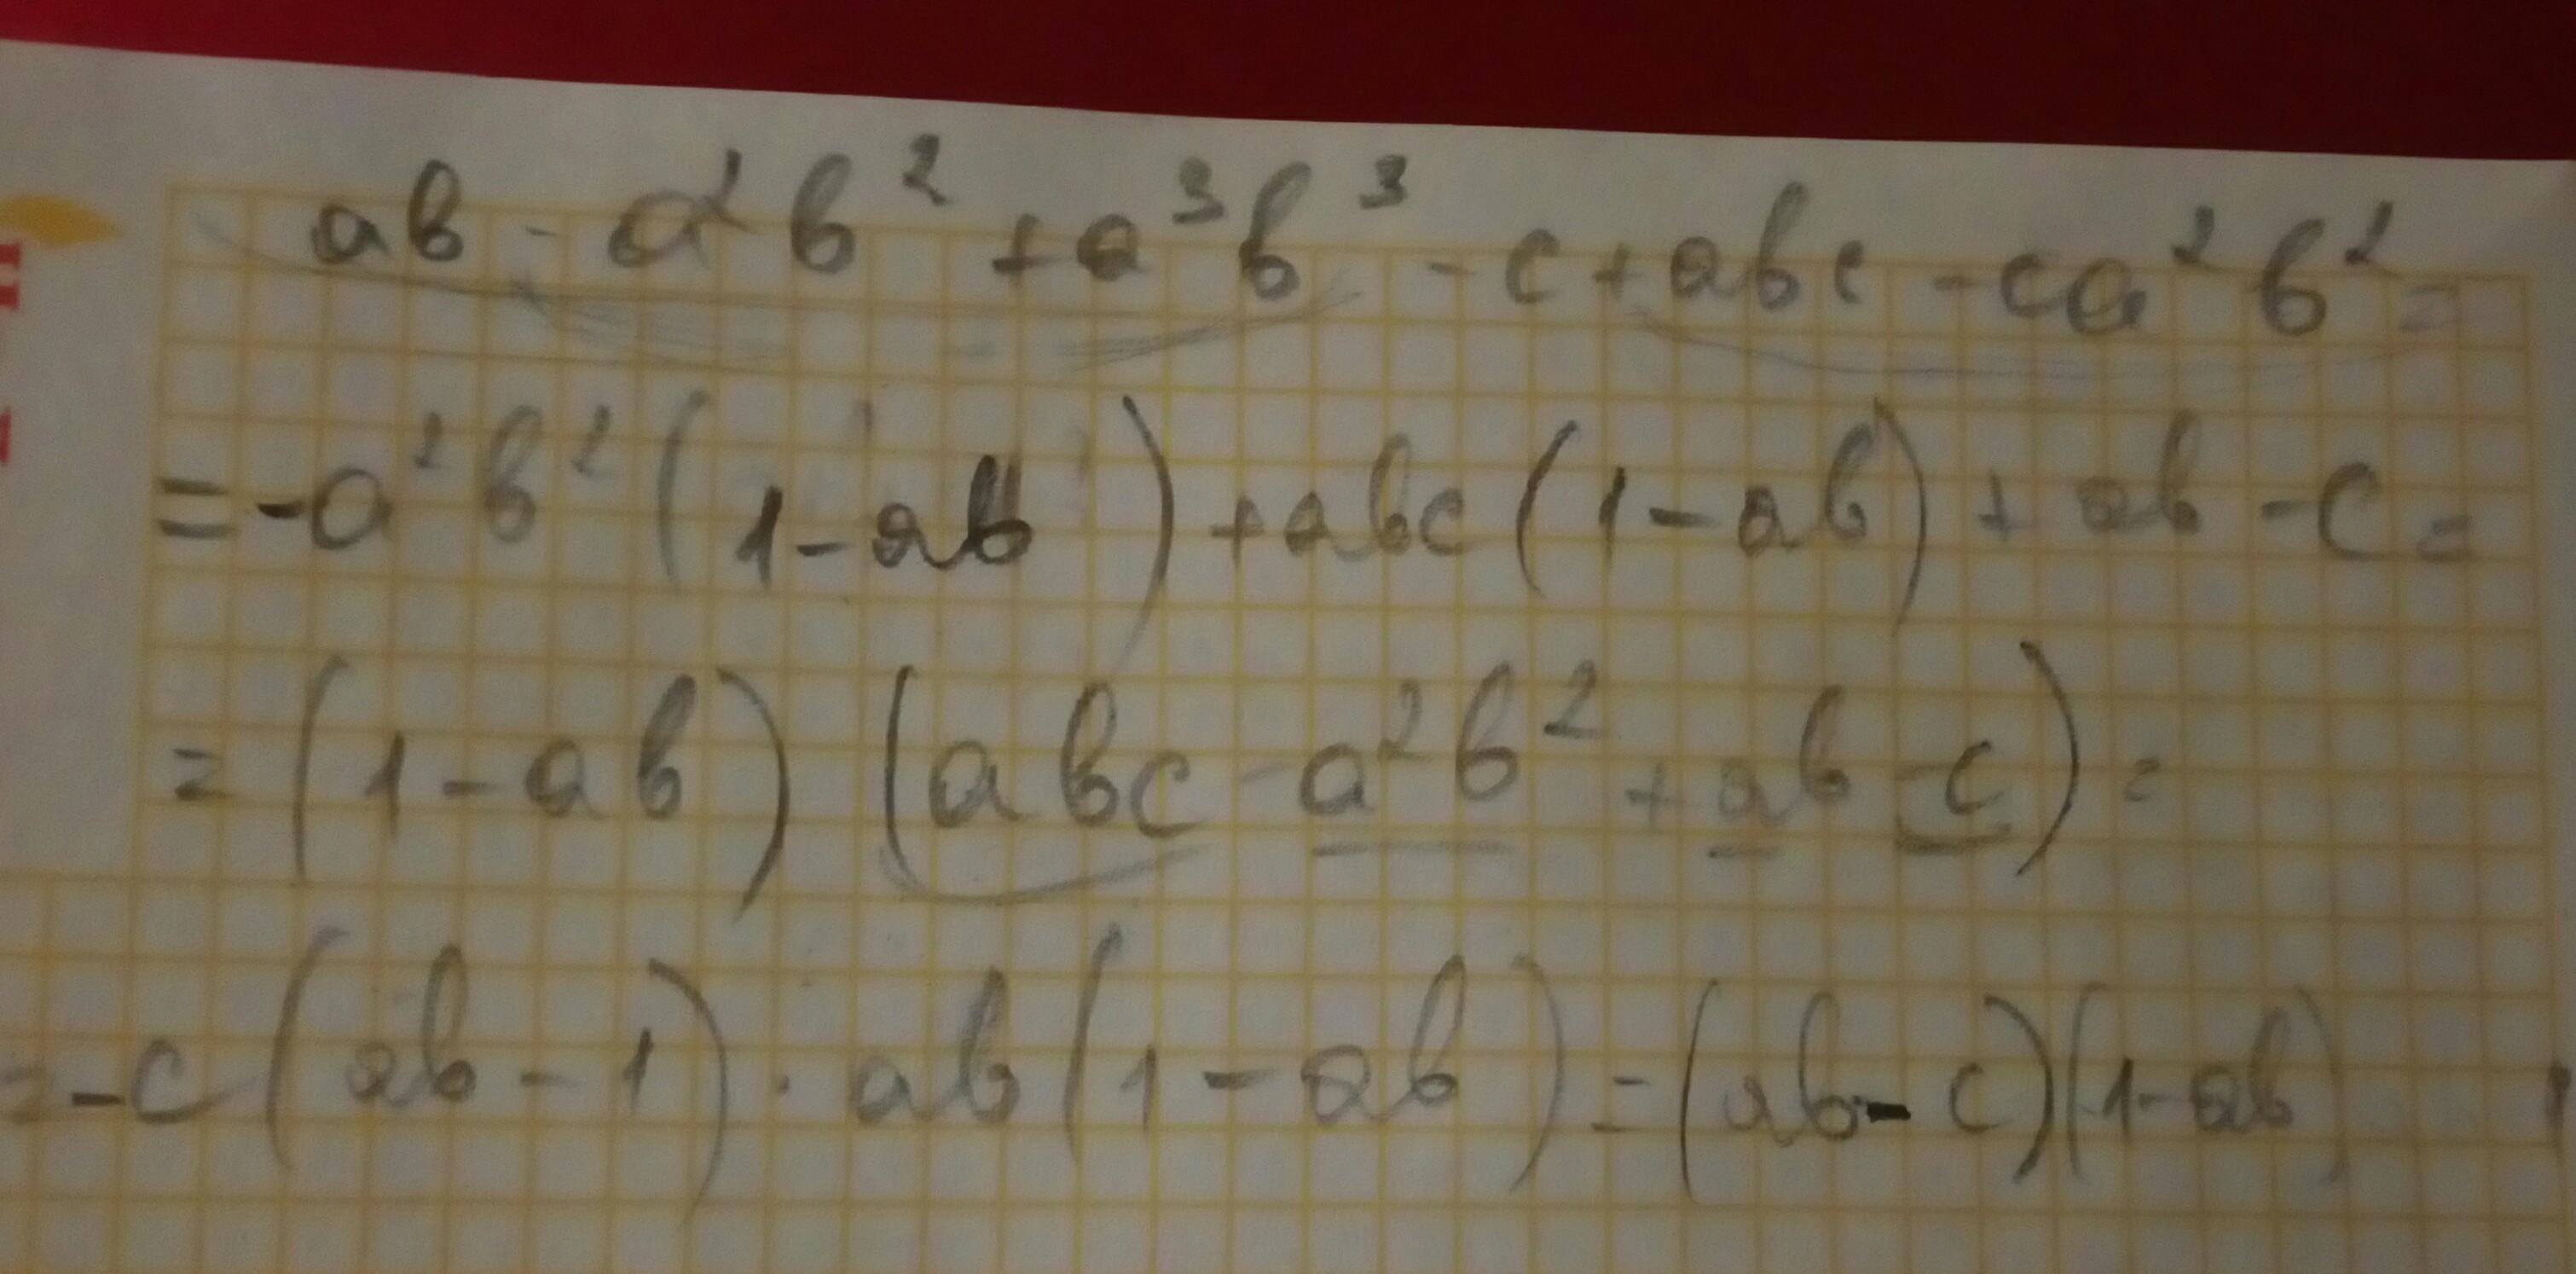 A 2 b 1 c 3. (3a+2b-c)+(a+b-2c). Разложите на множители a 3b 2- 3a-b 2. Ab-a2b2+a3b3-c+ABC-ca2b2. Разложите на множители ab-a2b2+a3b3-c+ABC-ca2b2.